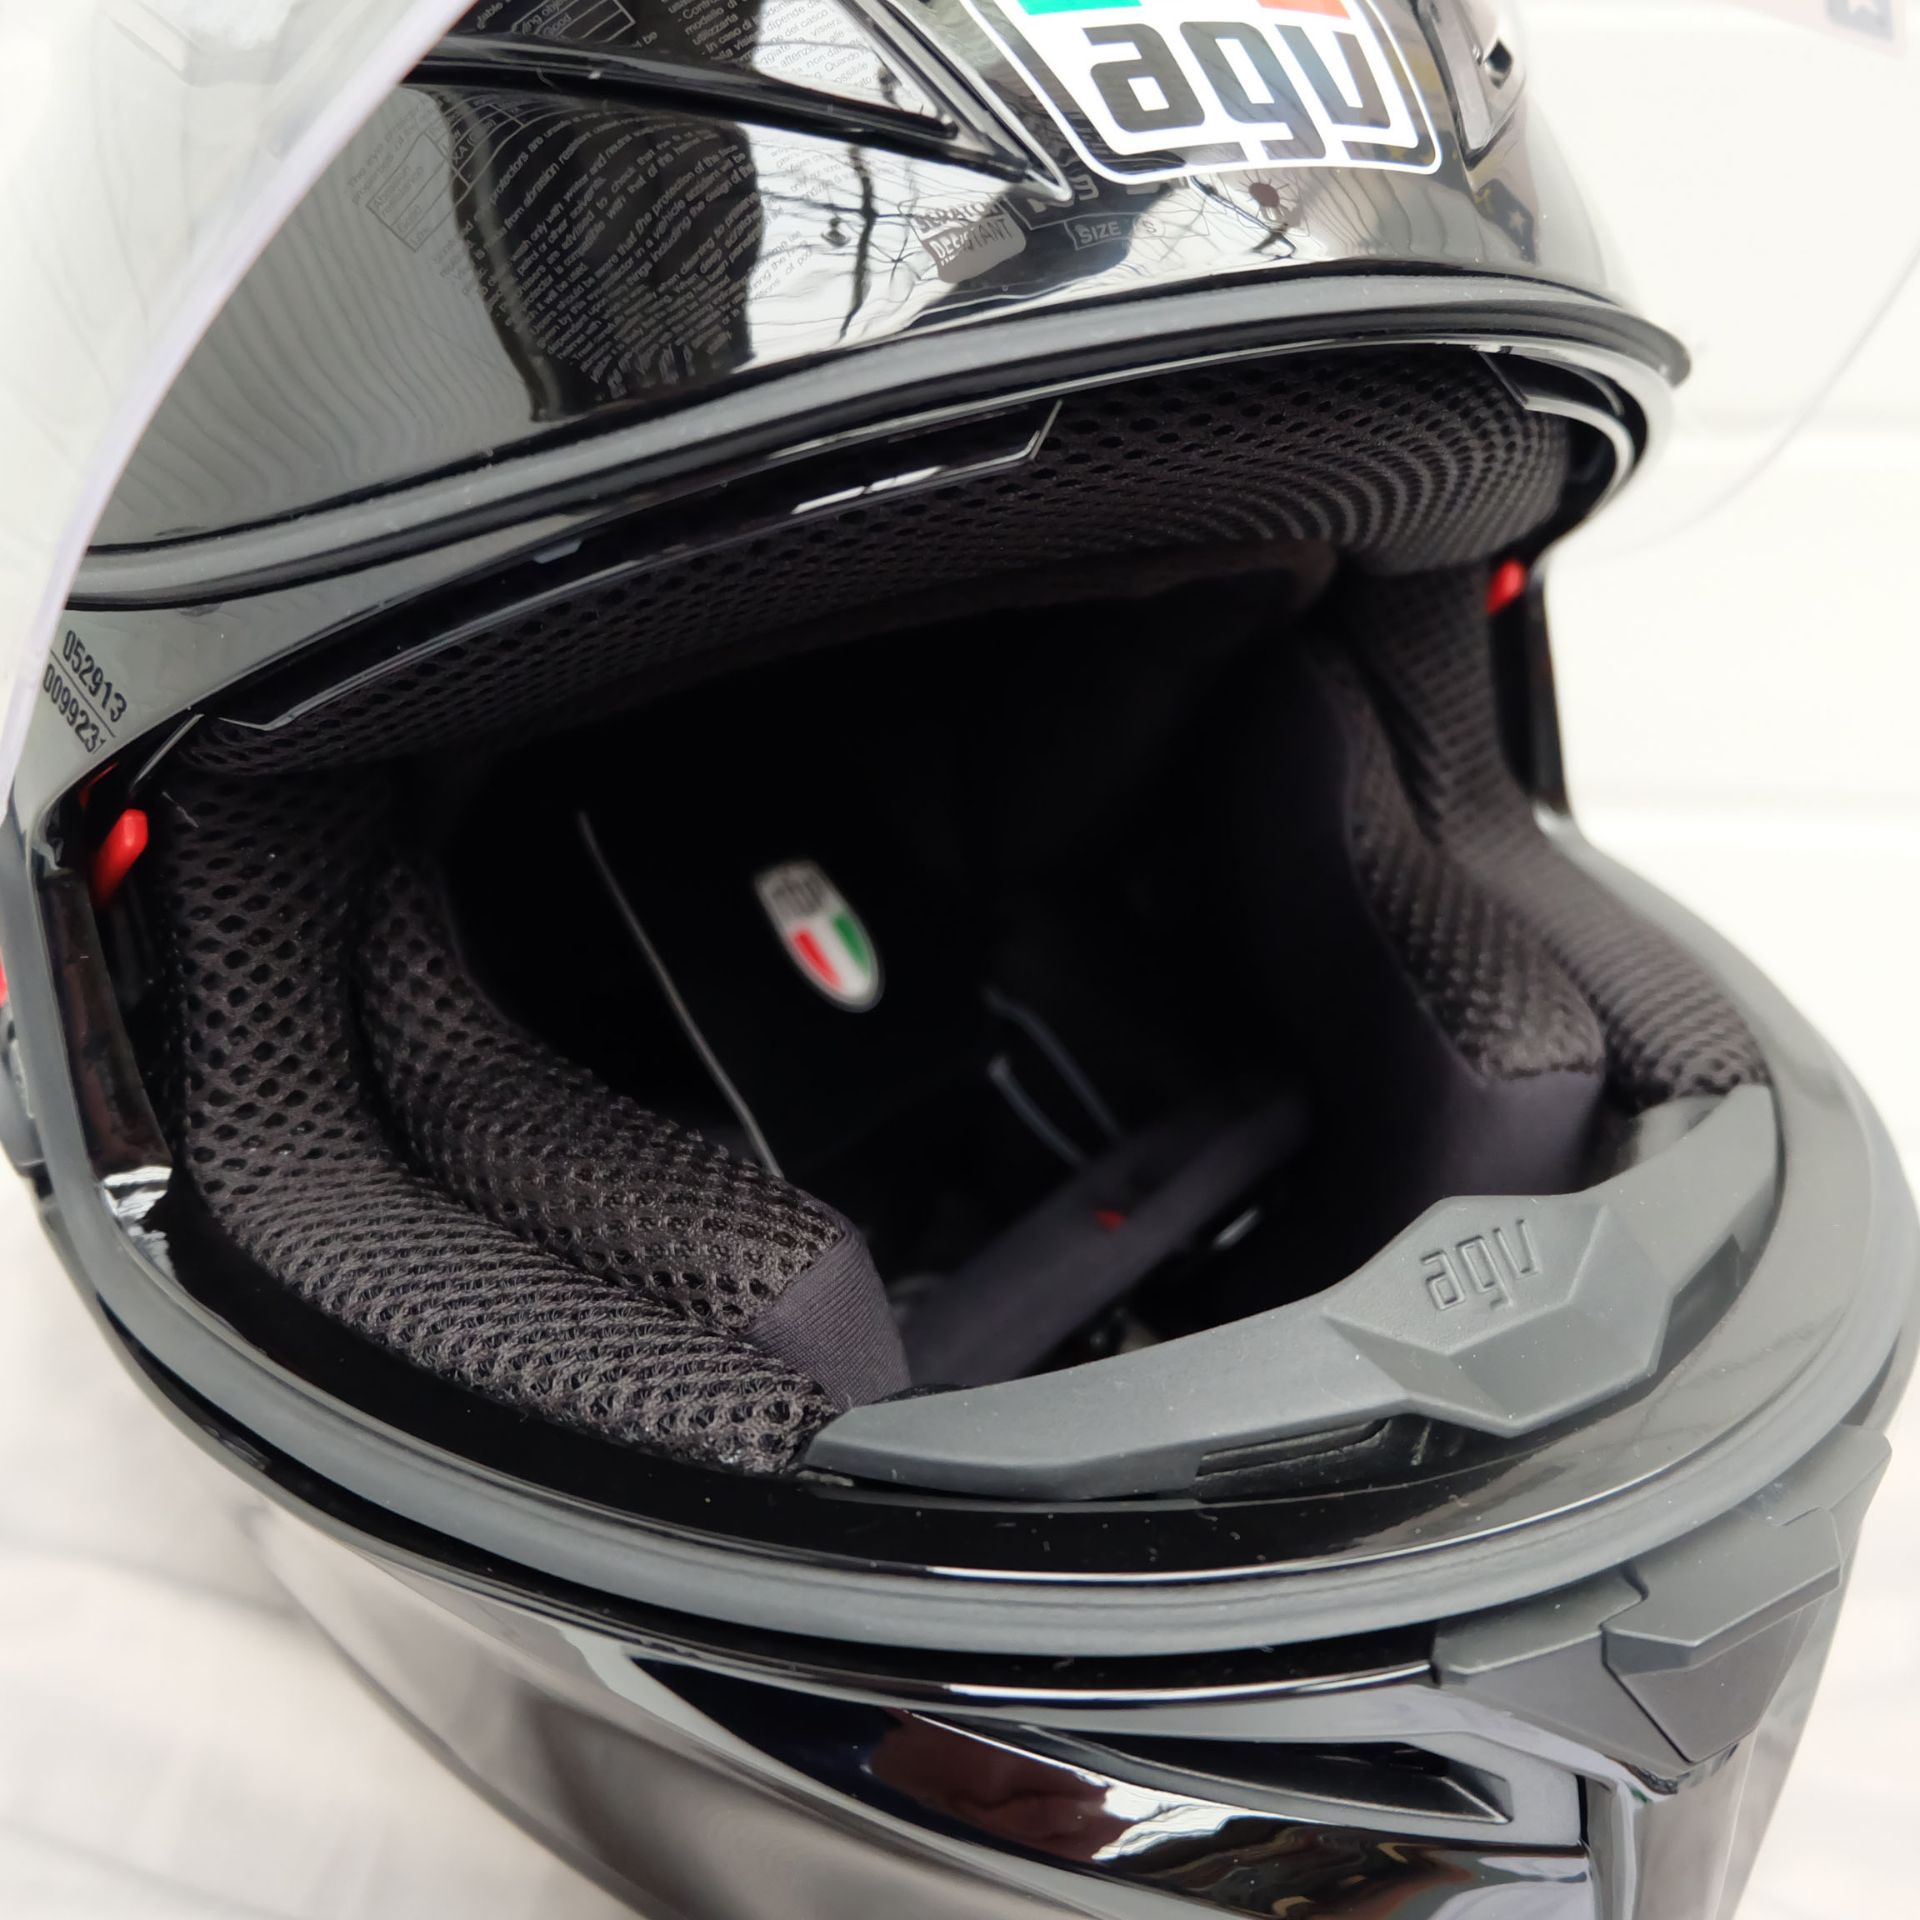 AGV K3 SV-S Full Face Helmet Black Size Small - Image 4 of 14